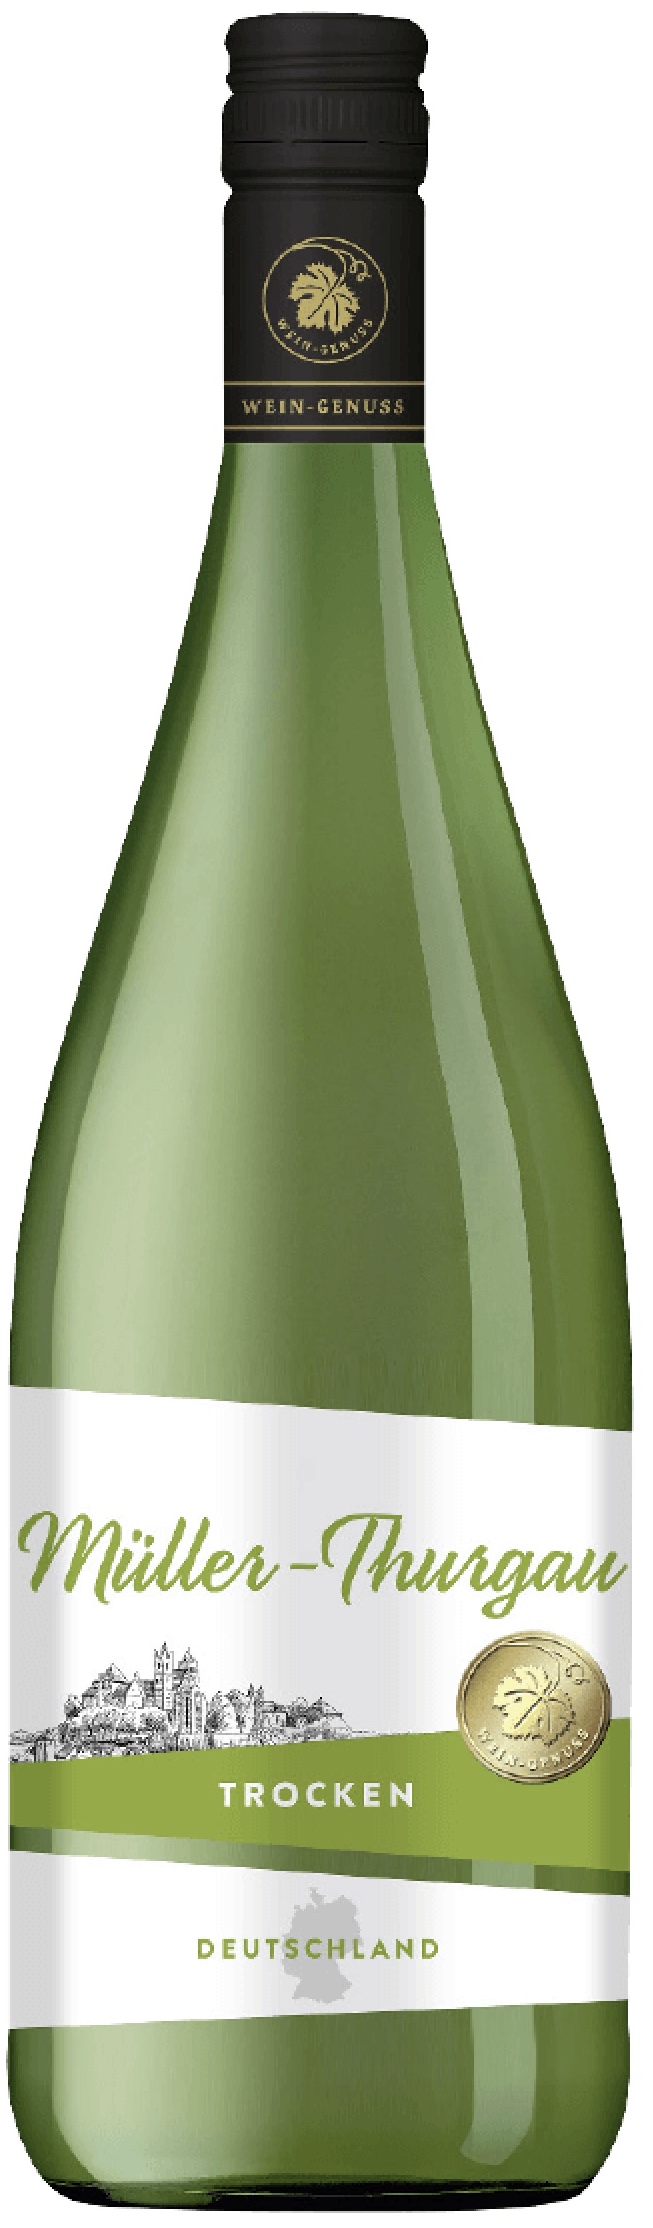 Wein-Genuss Müller-Thurgau 11,5% trocken Rheinhessen vol. 1,0L